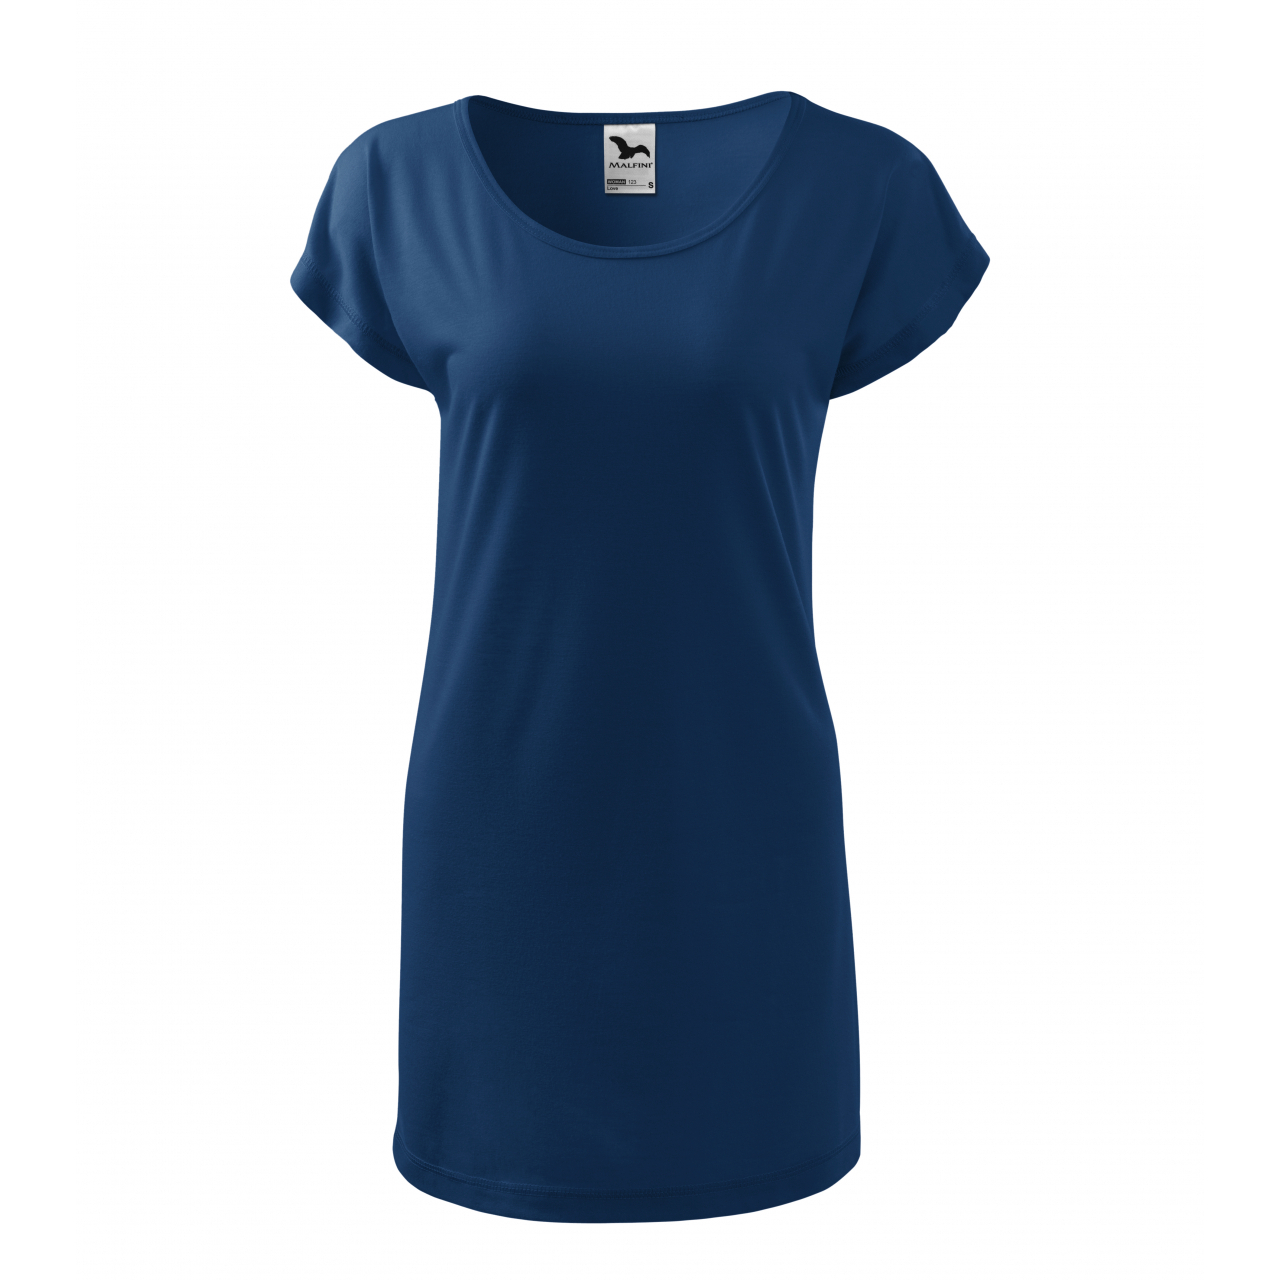 Šaty Malfini Love - tmavě modré, XL